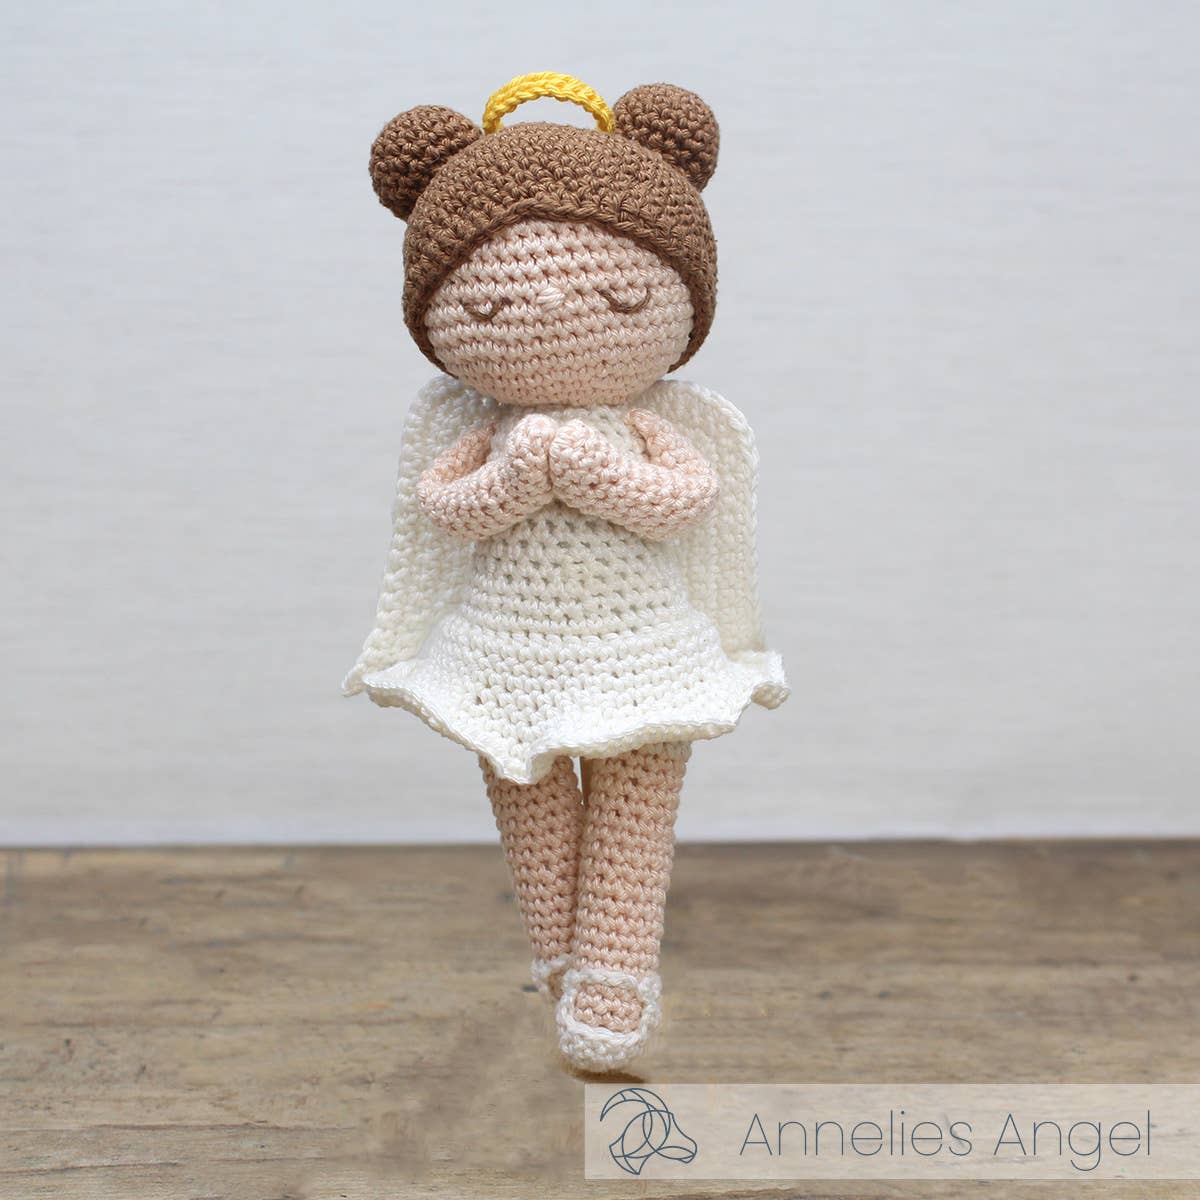 HardiCraft - Annelies Angel - Crochet Kit